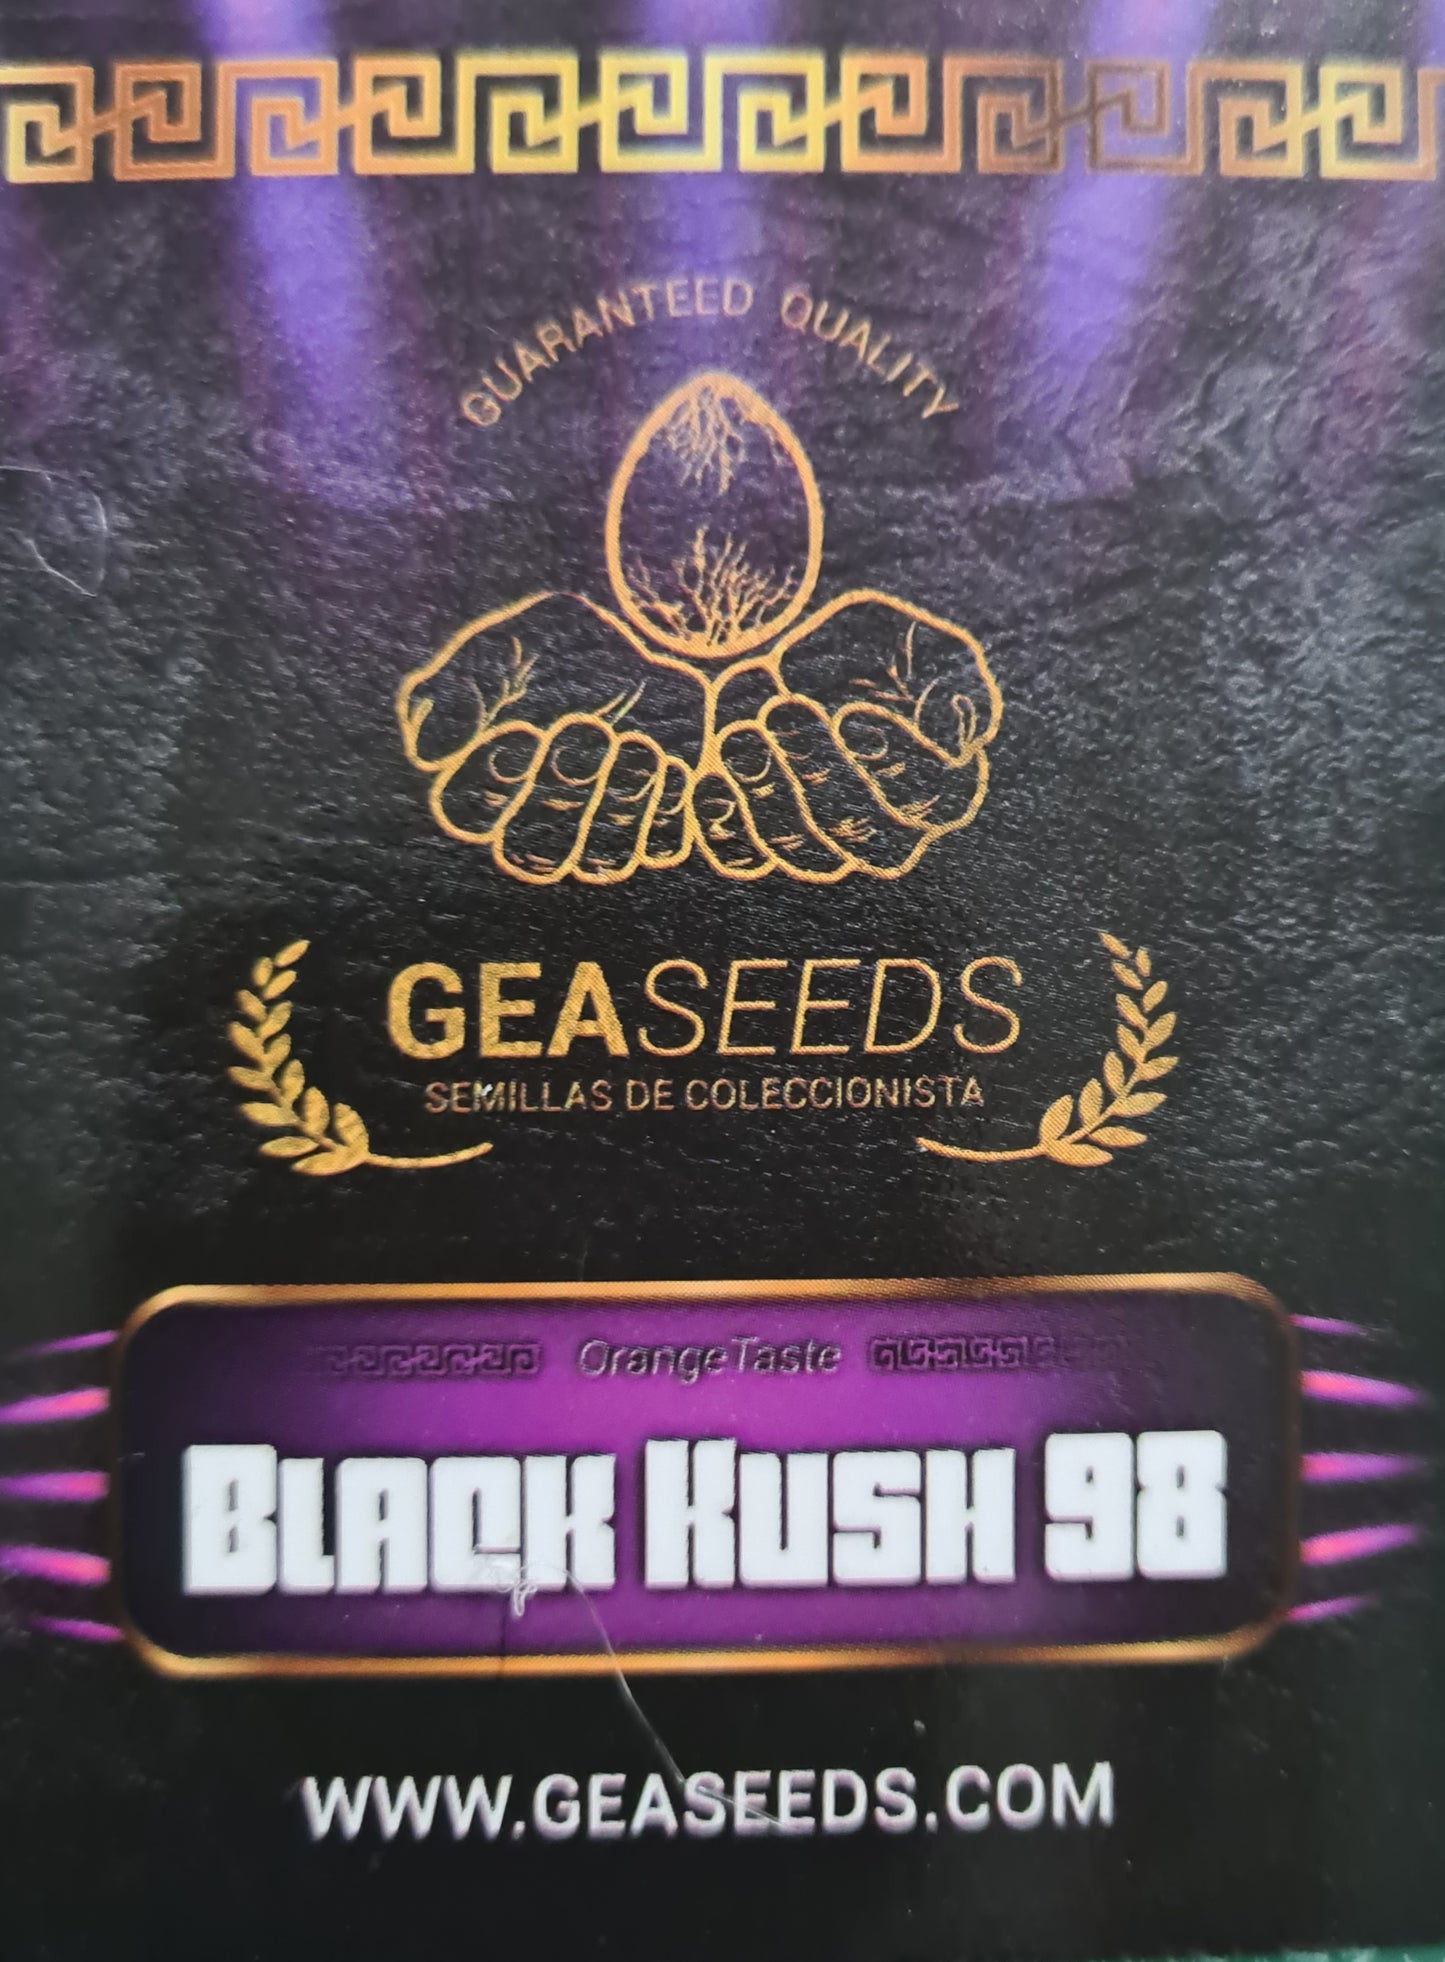 Black Kush 98 Gea Seeds Fem